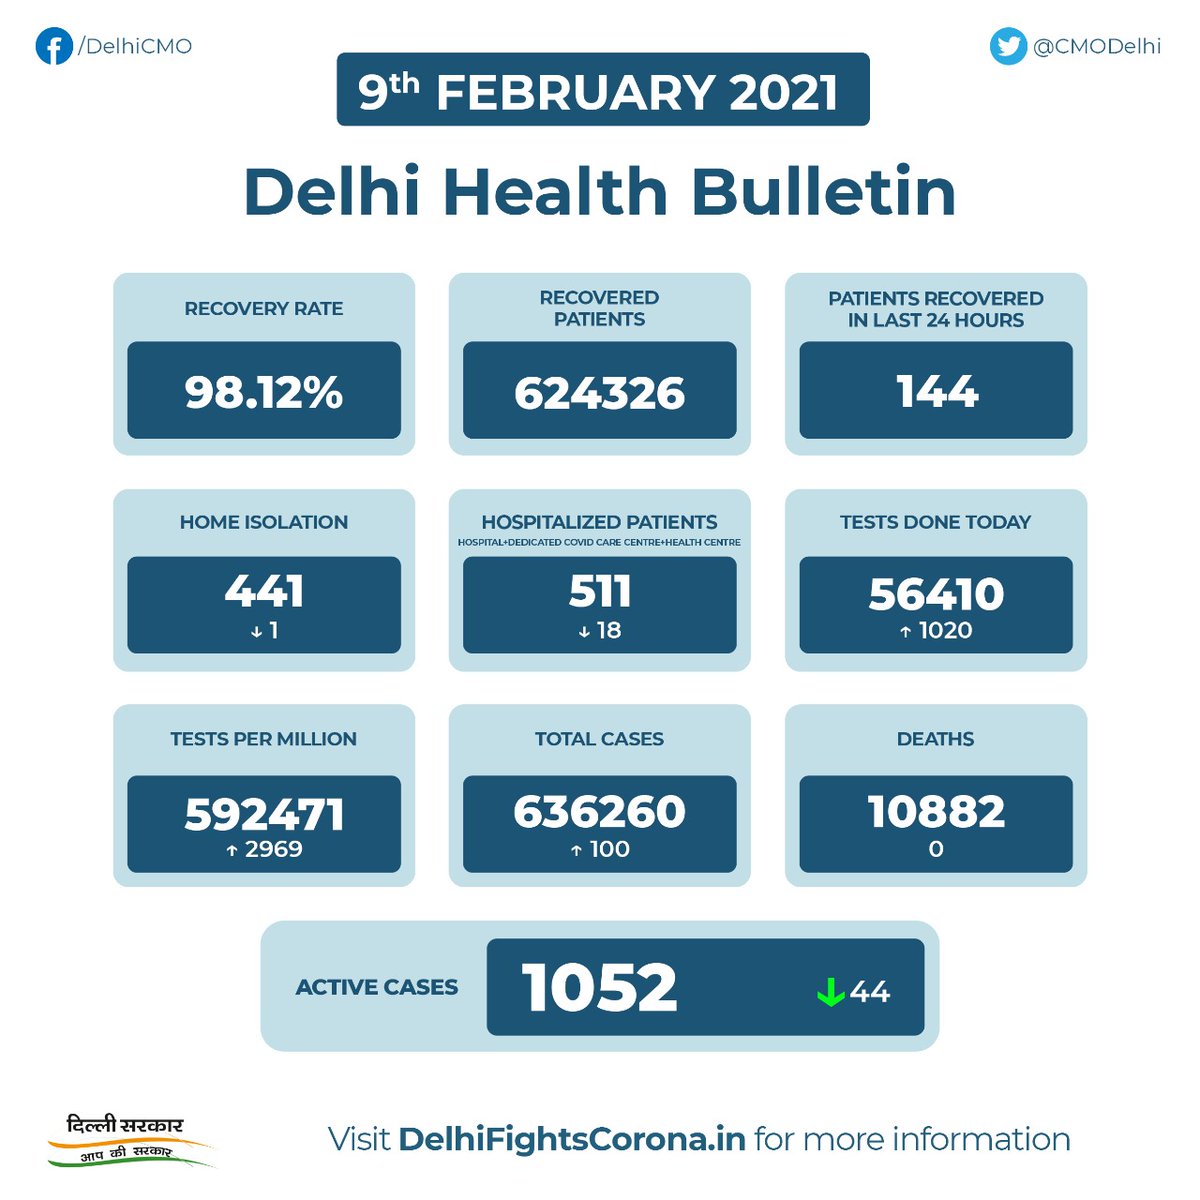 Cmo Delhi Delhi Health Bulletin 9th February 21 Delhifightscorona